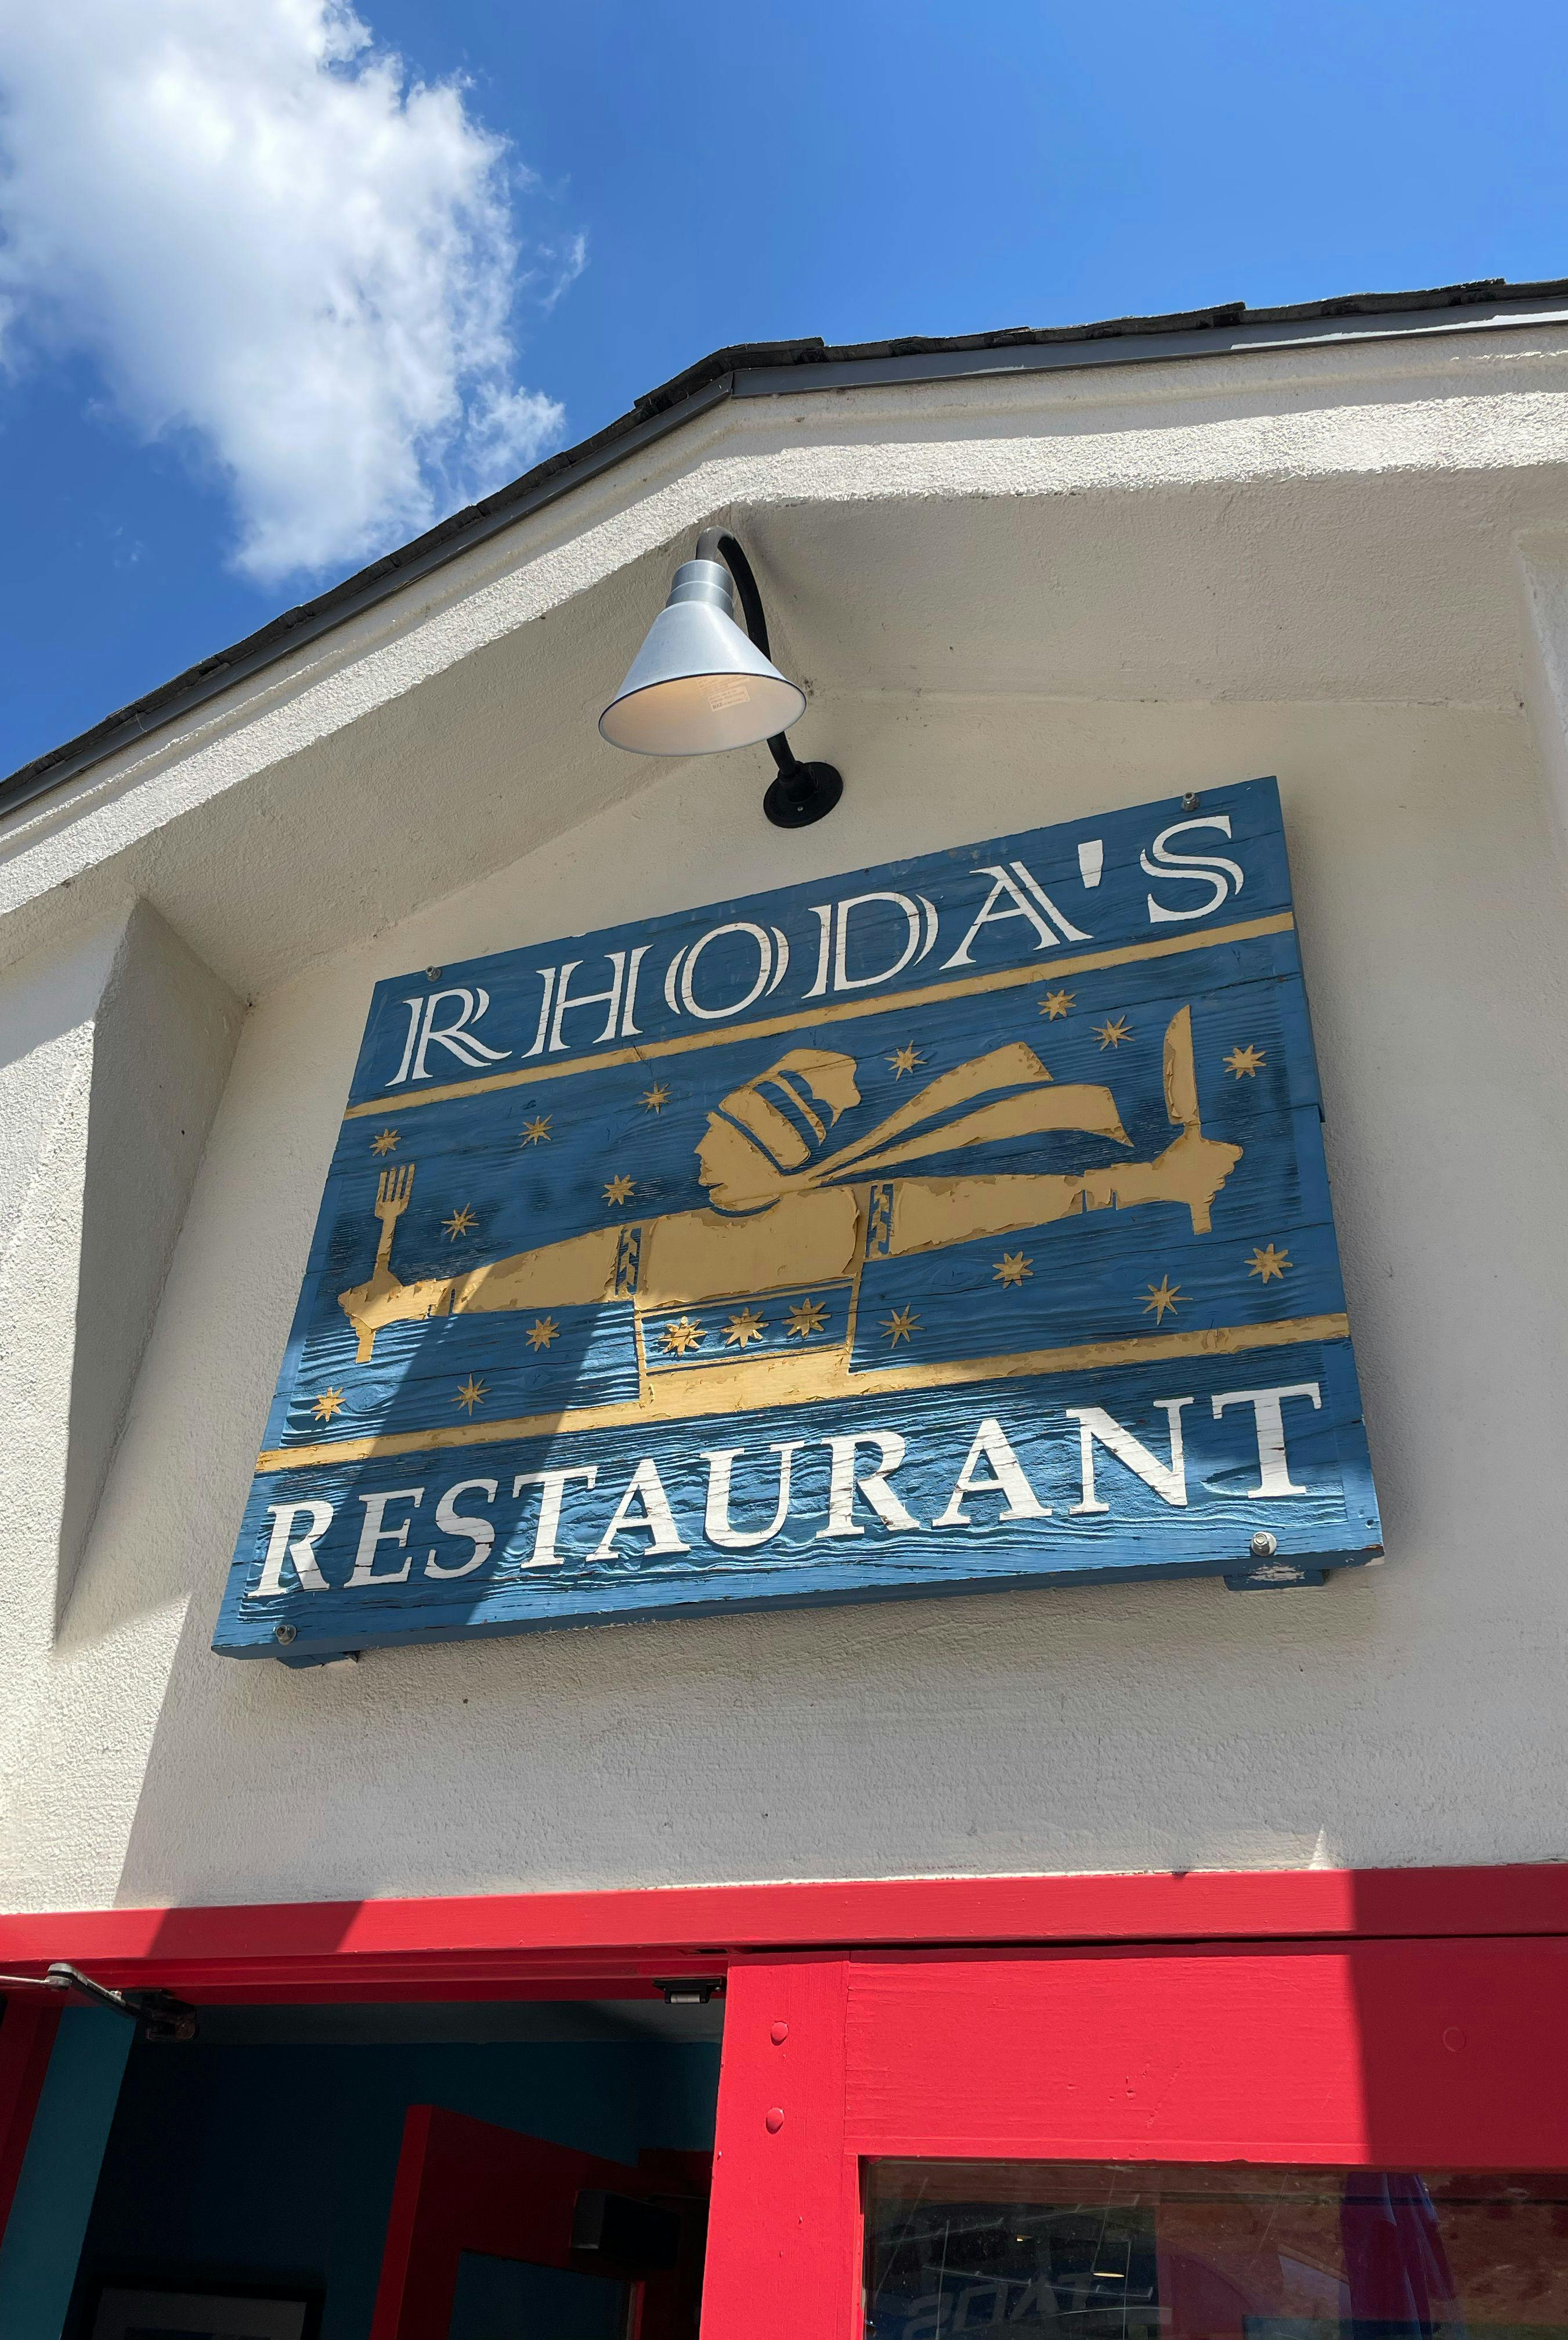 Sign for Rhoda's Restaurant